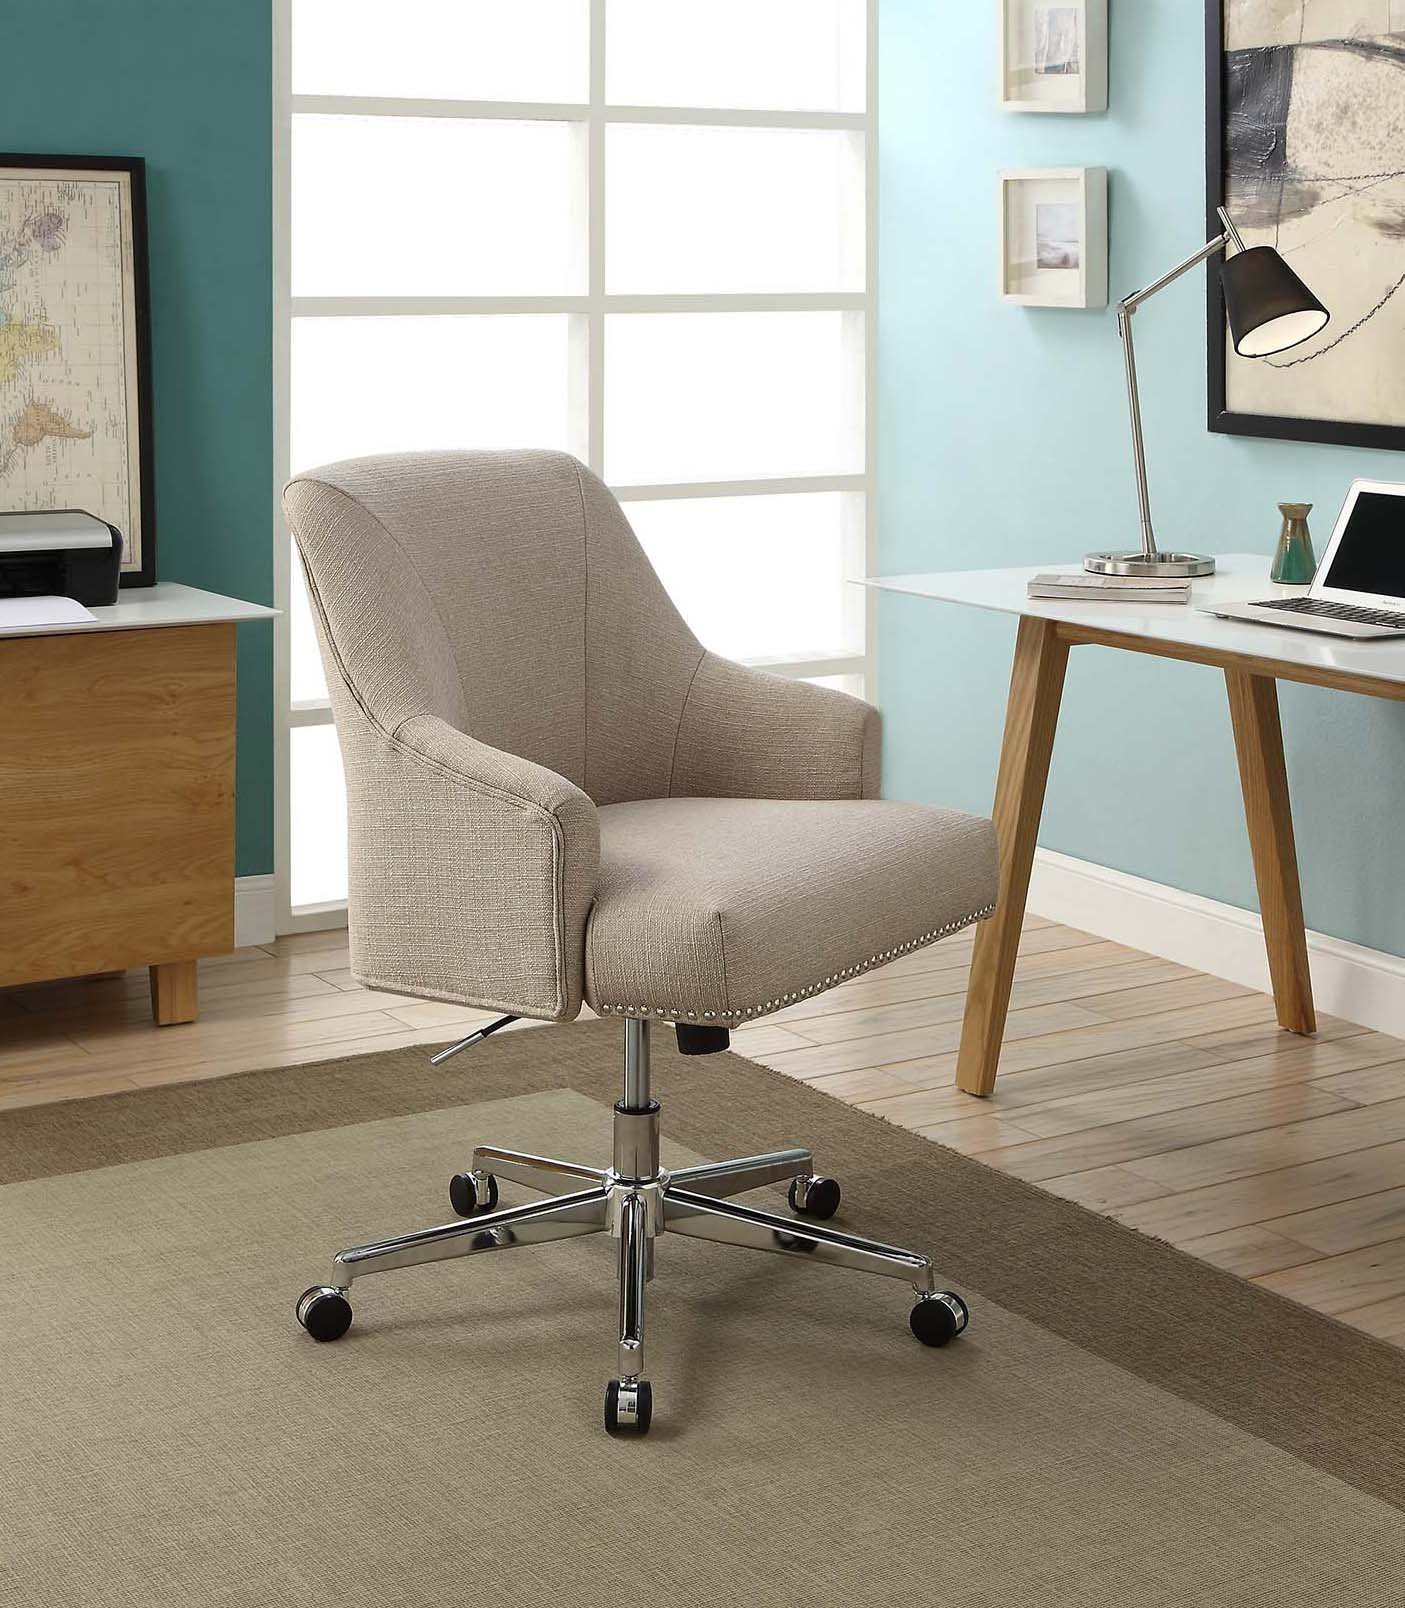 Стул рабочий офисный. Кресло рабочее. Стул для домашнего кабинета. Кресло для письменного стола. Кресло рабочее дизайнерское.